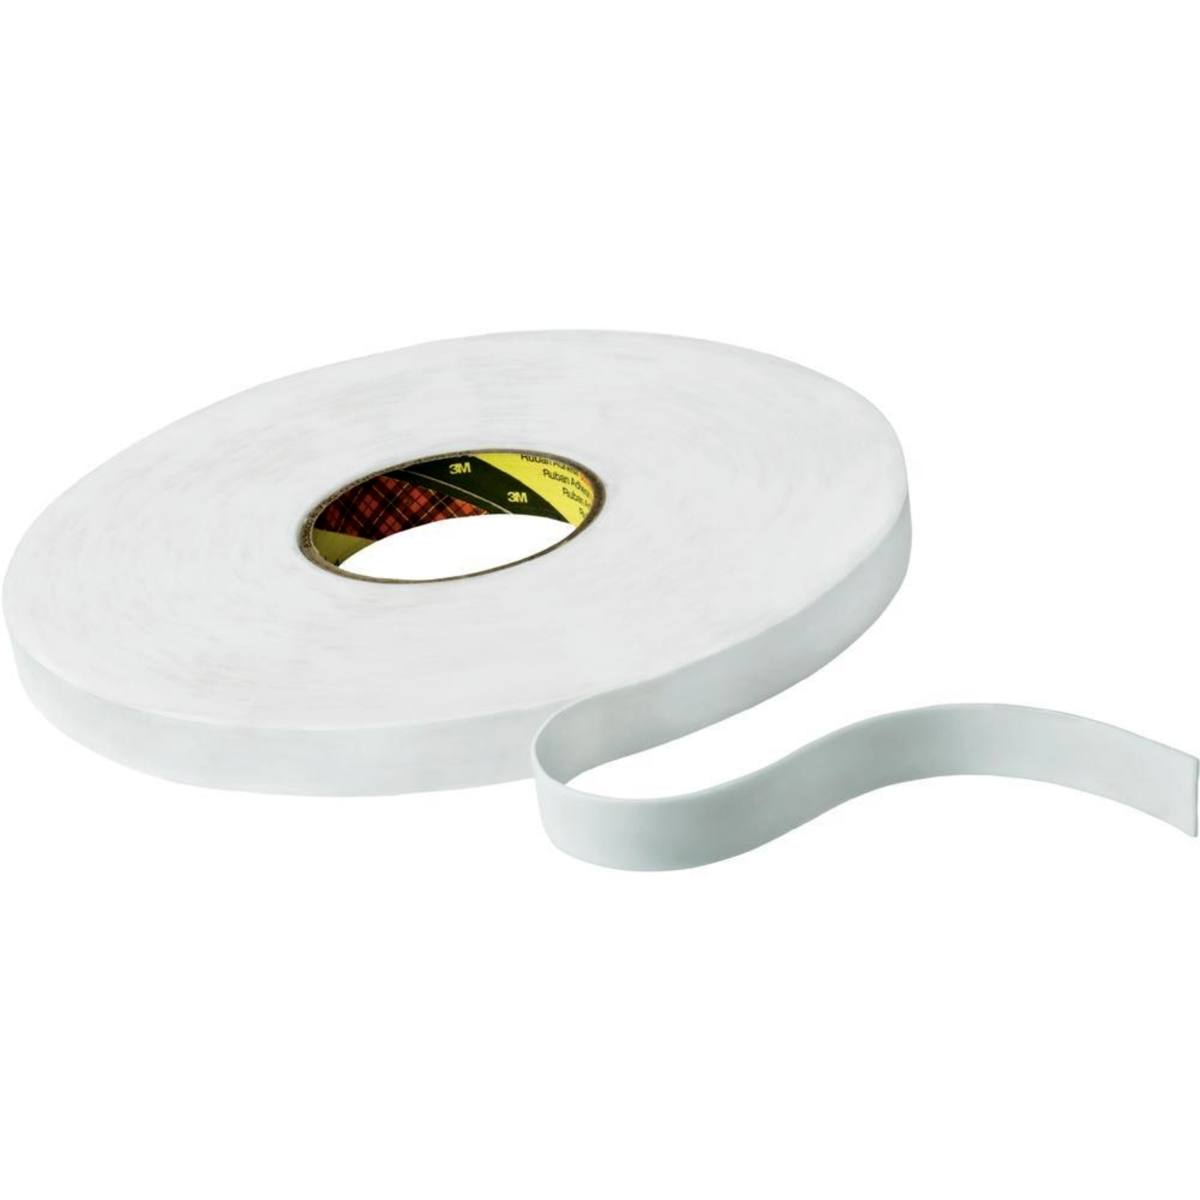 Cinta adhesiva de espuma de PE 3M con adhesivo de resina de caucho 9528, blanca, 12 mm x 66 m, 0,8 mm